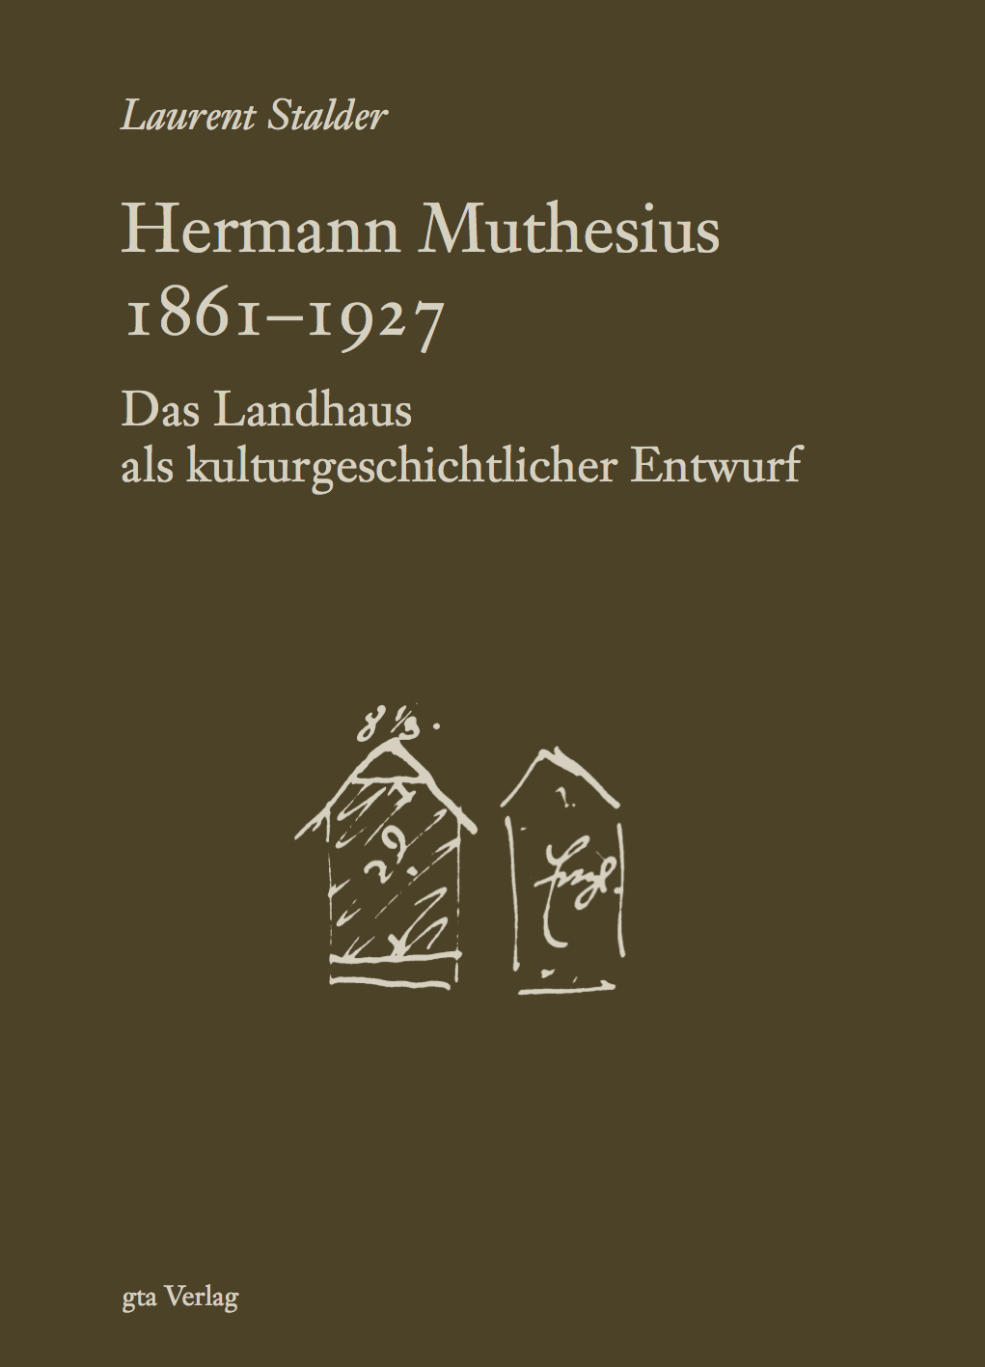 Vergrösserte Ansicht: Hermann Muthesius 1861–1927. Das Landhaus als kulturgeschichtlicher Entwurf Cover, 2009